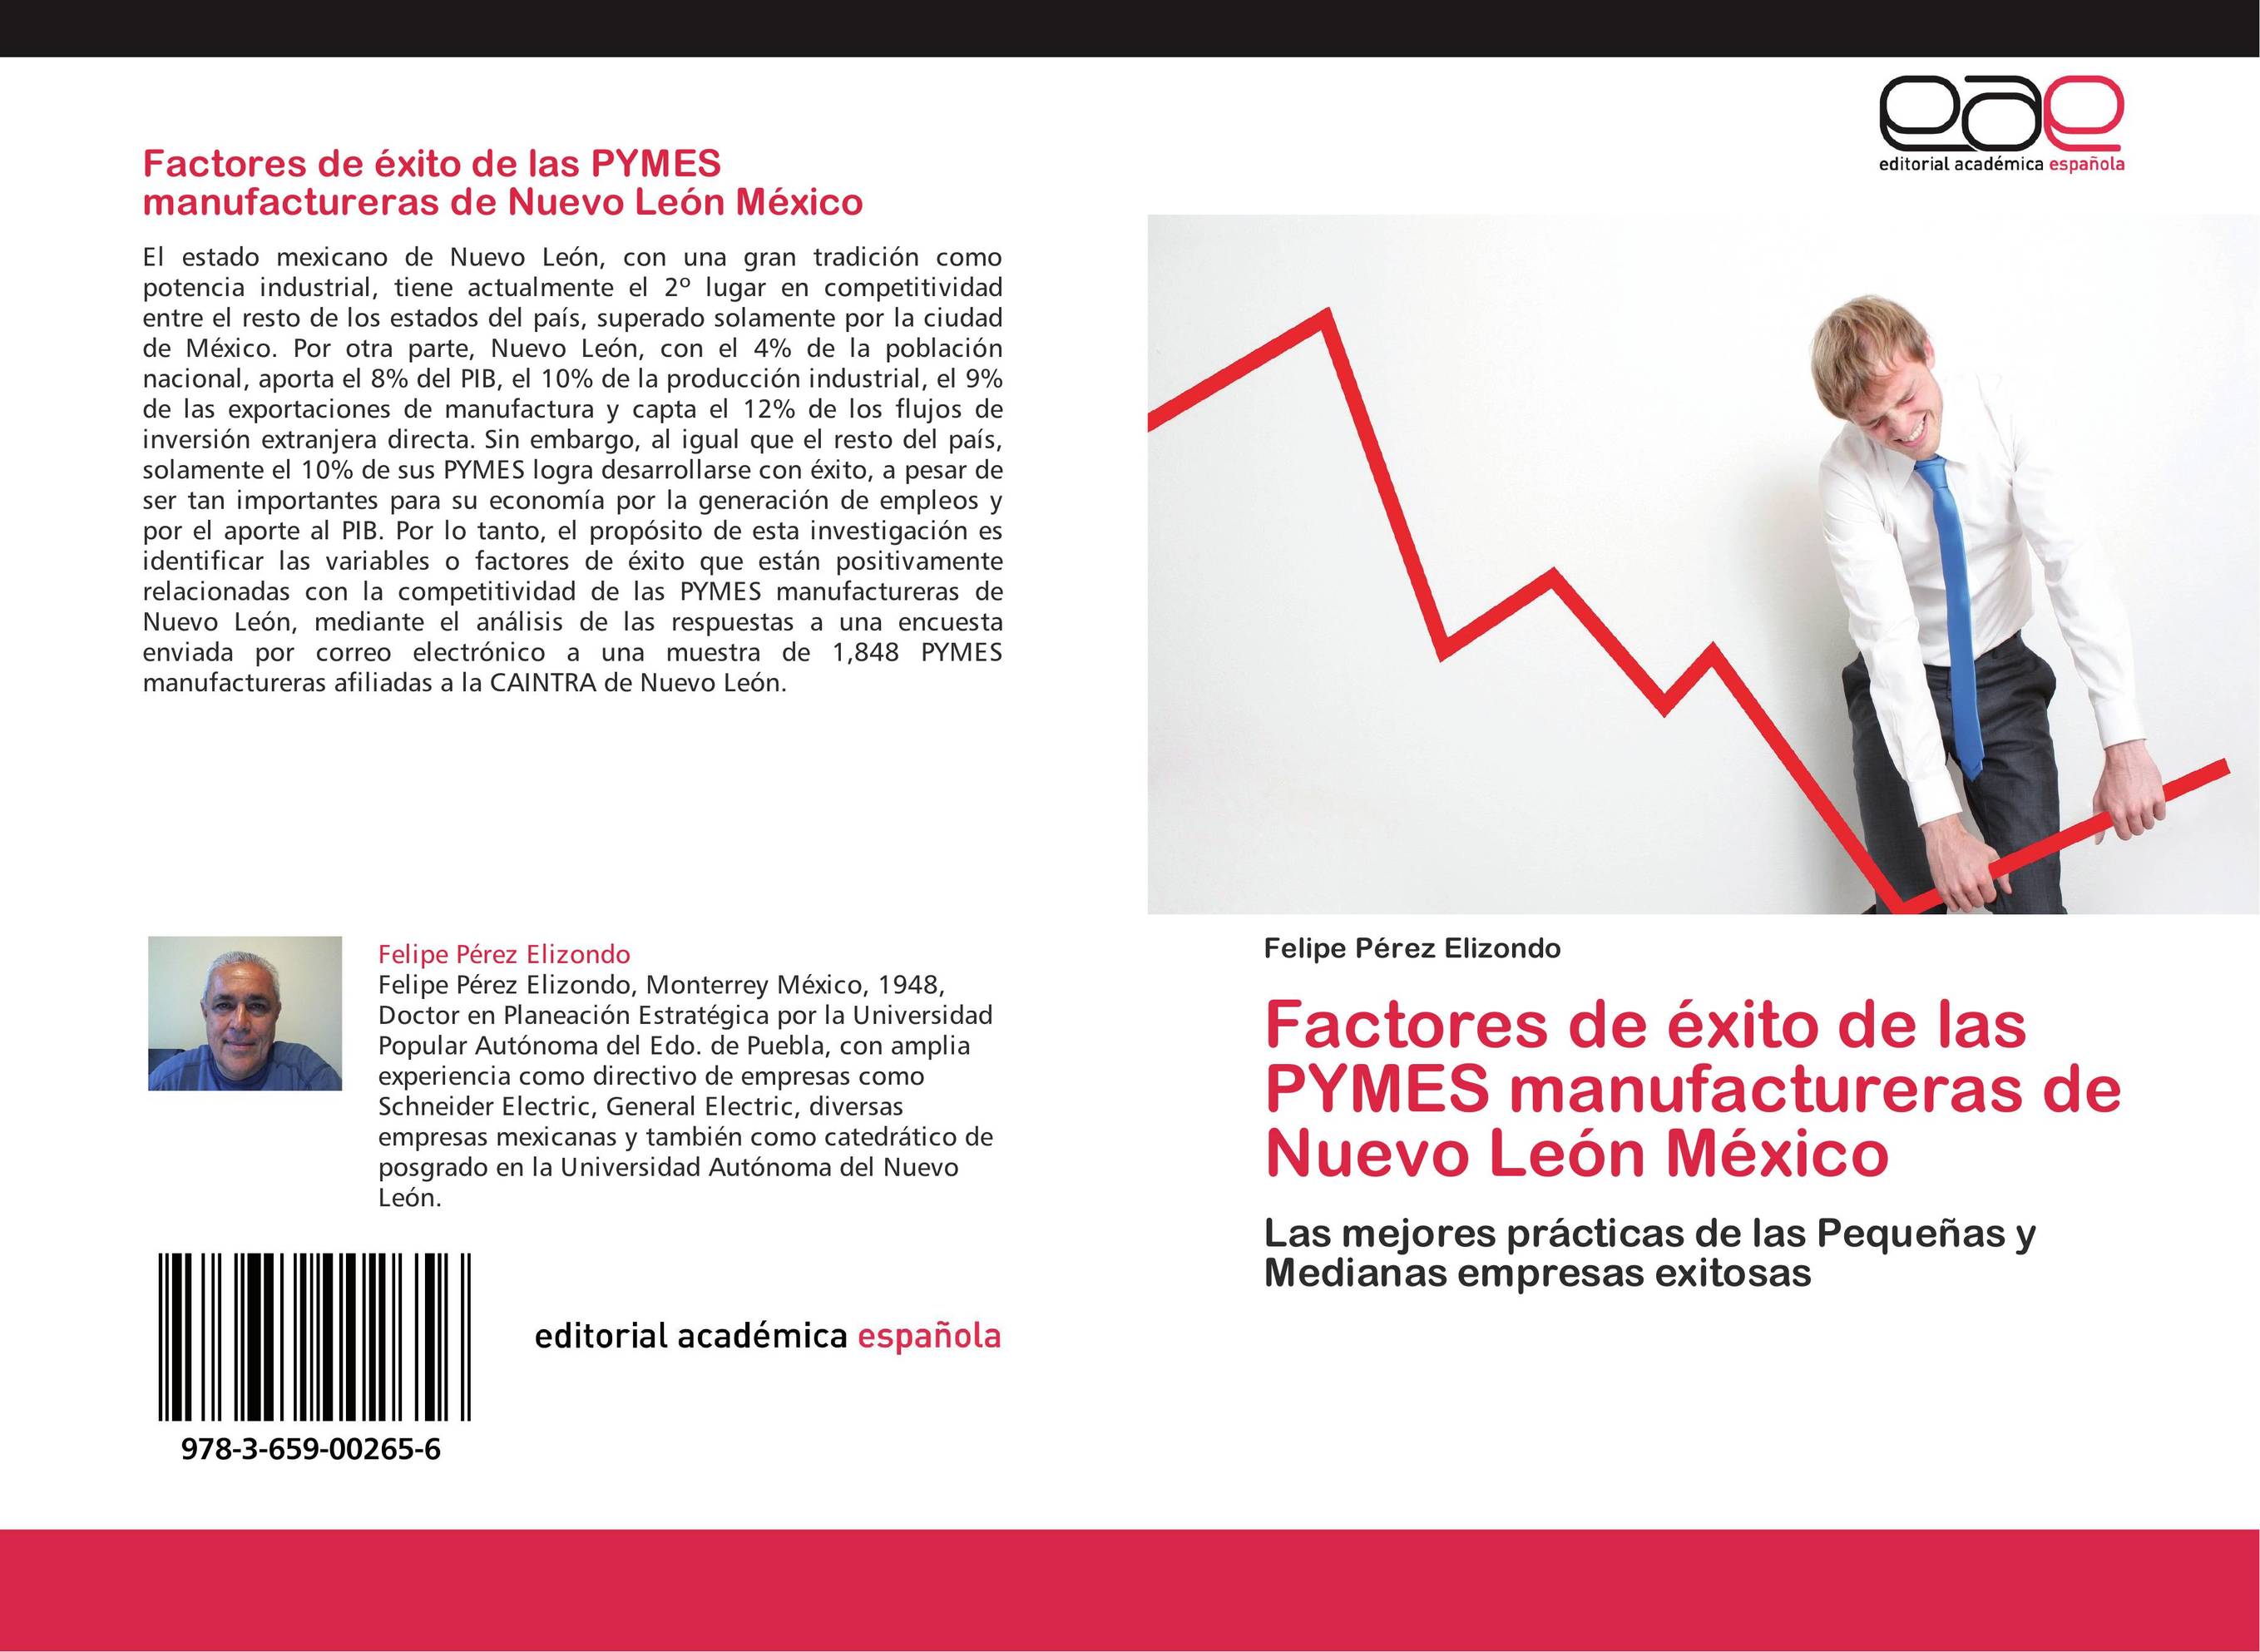 Factores de éxito de las PYMES manufactureras de Nuevo León México